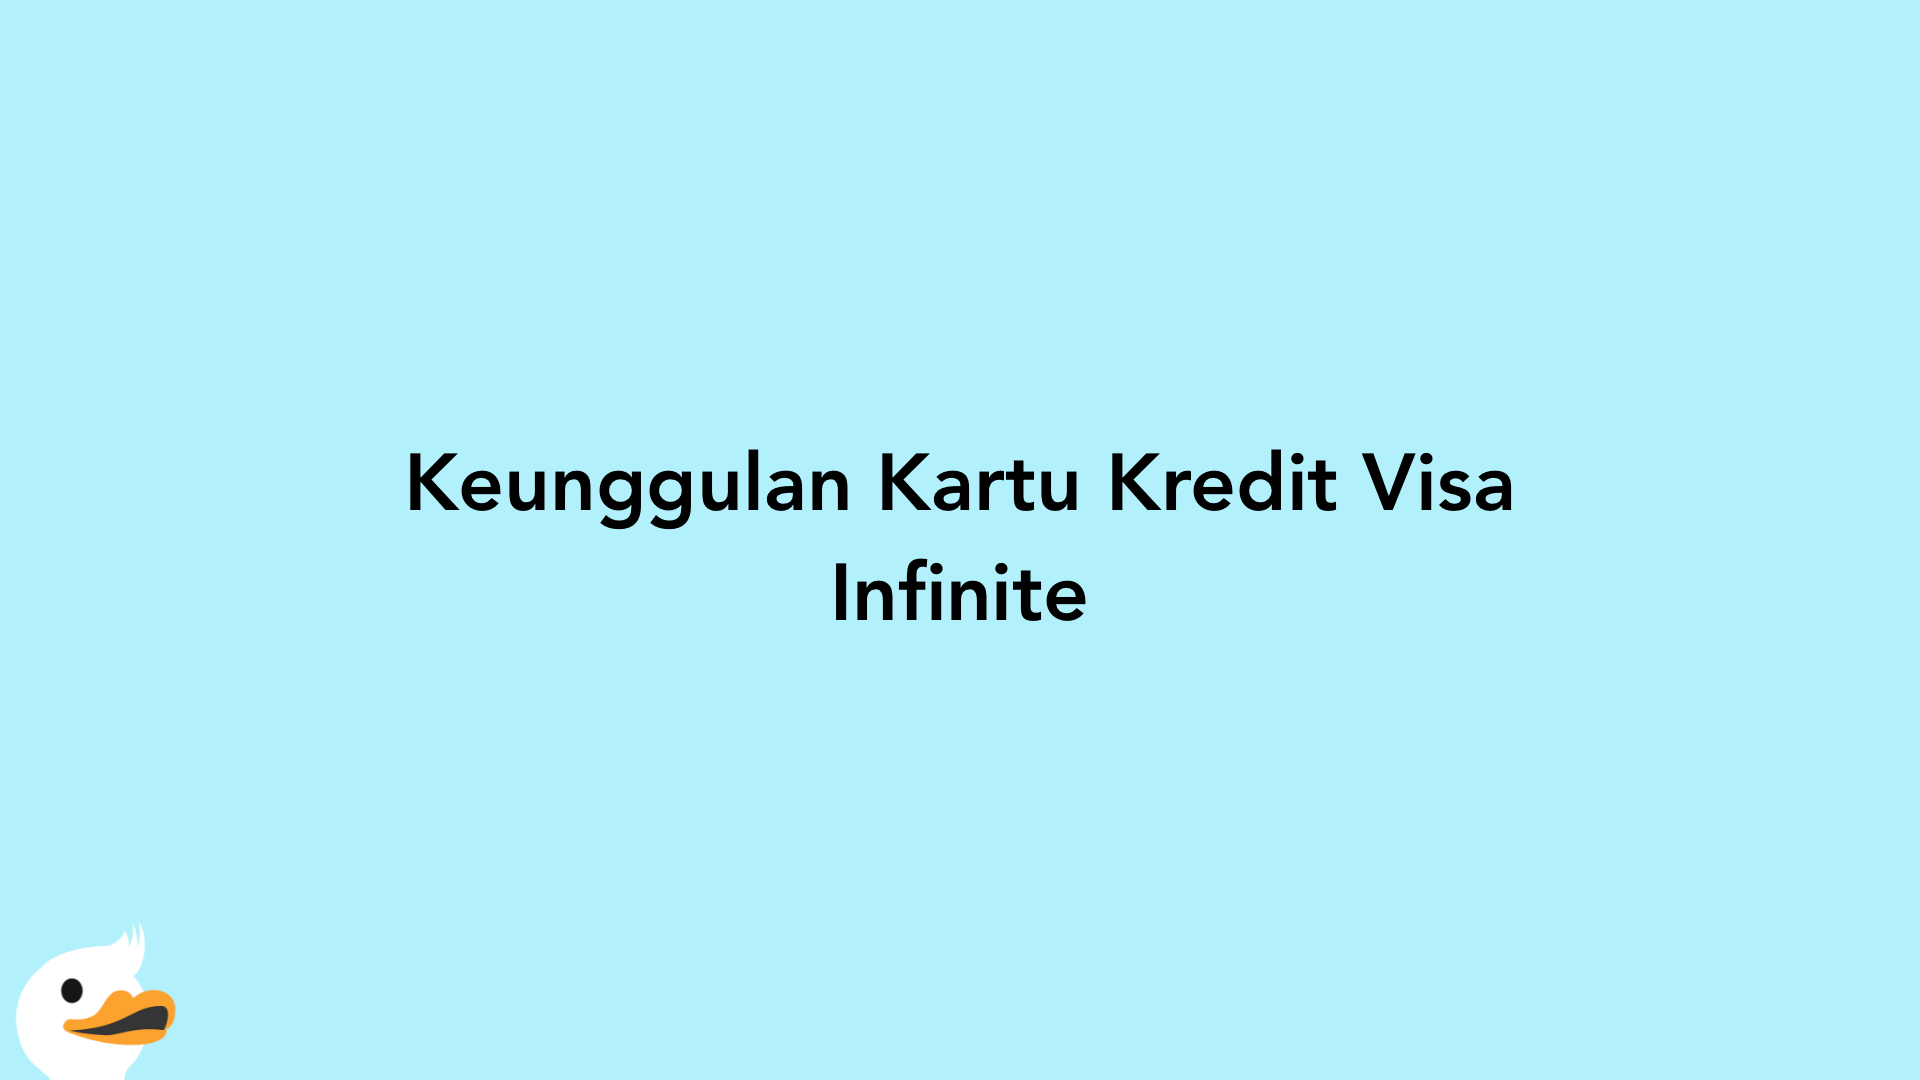 Keunggulan Kartu Kredit Visa Infinite